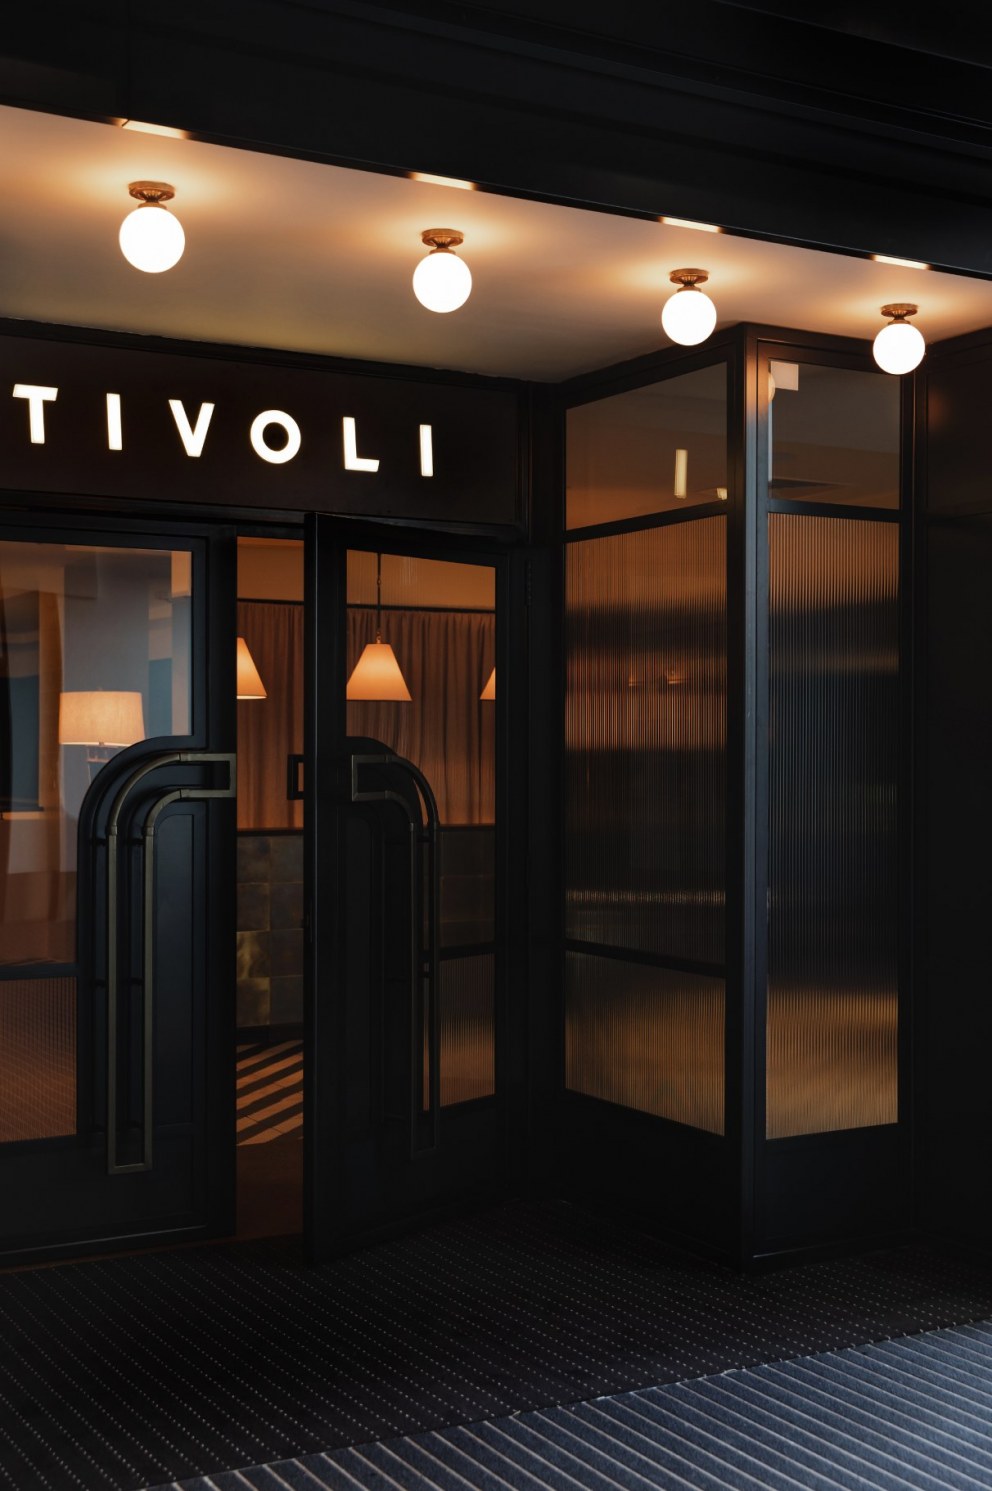 Tivoli Cinema | Tivoli Cinema Cheltenham - Entrance | Interior Designers